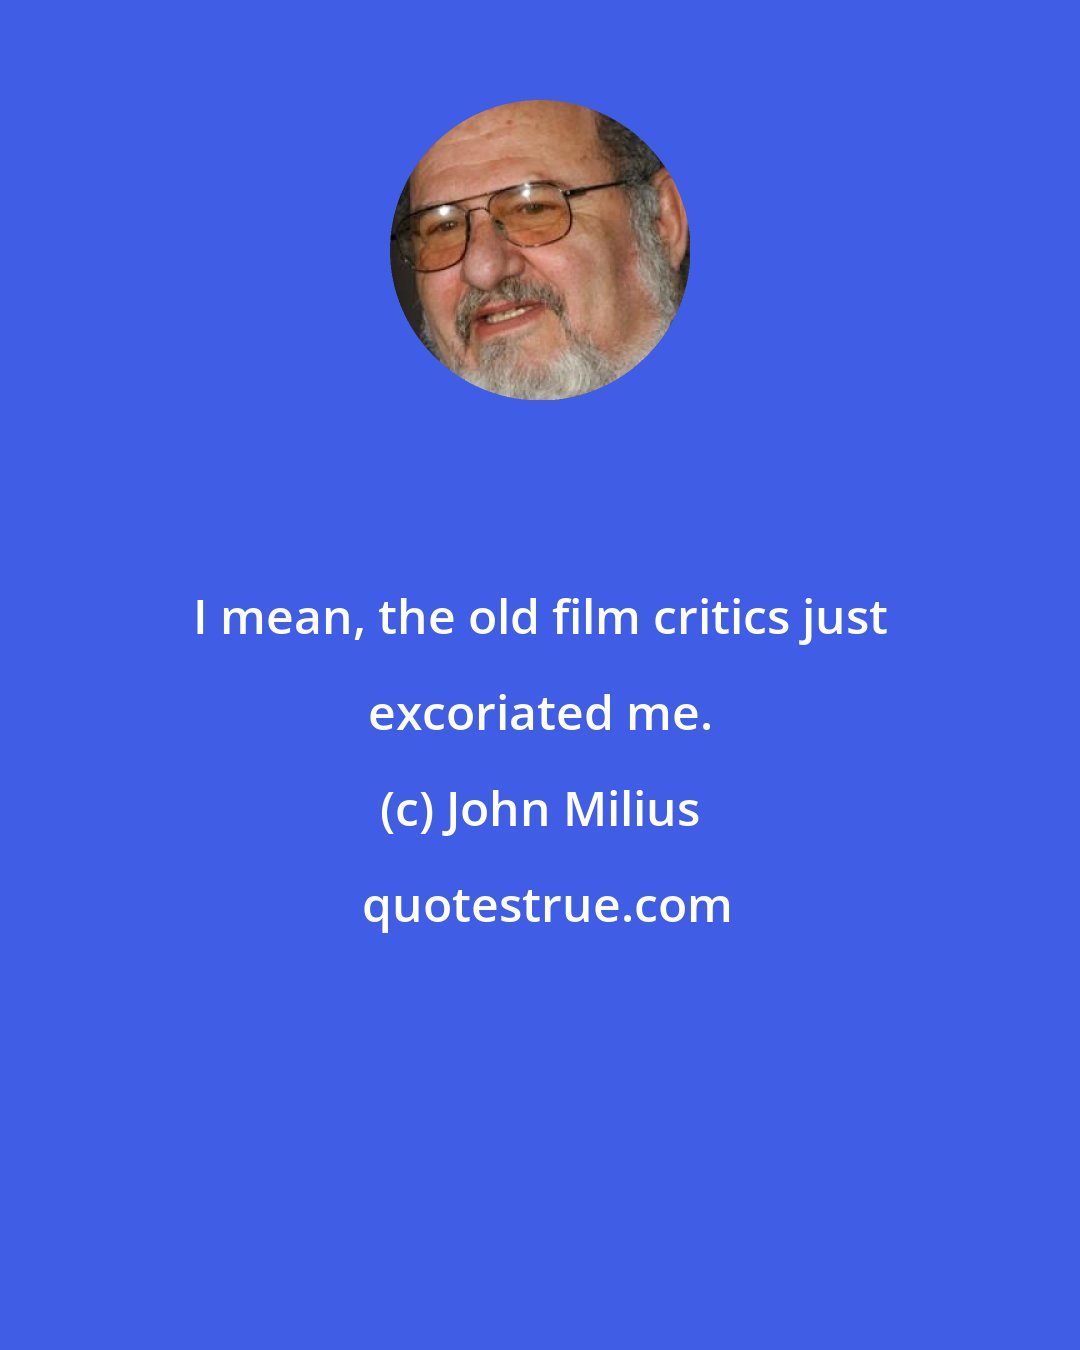 John Milius: I mean, the old film critics just excoriated me.